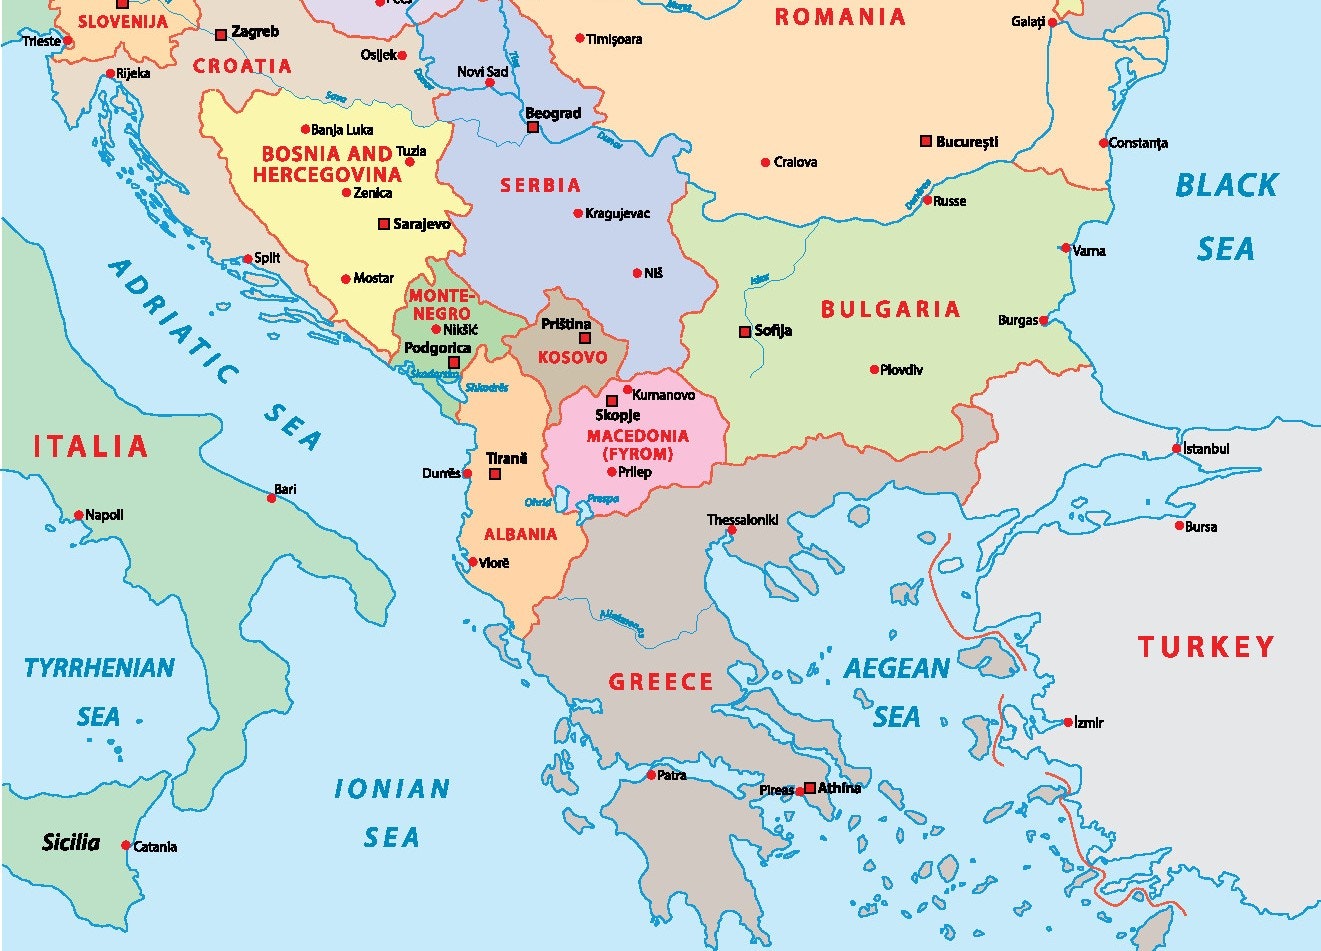 Mappa dell'Europa sudorientale